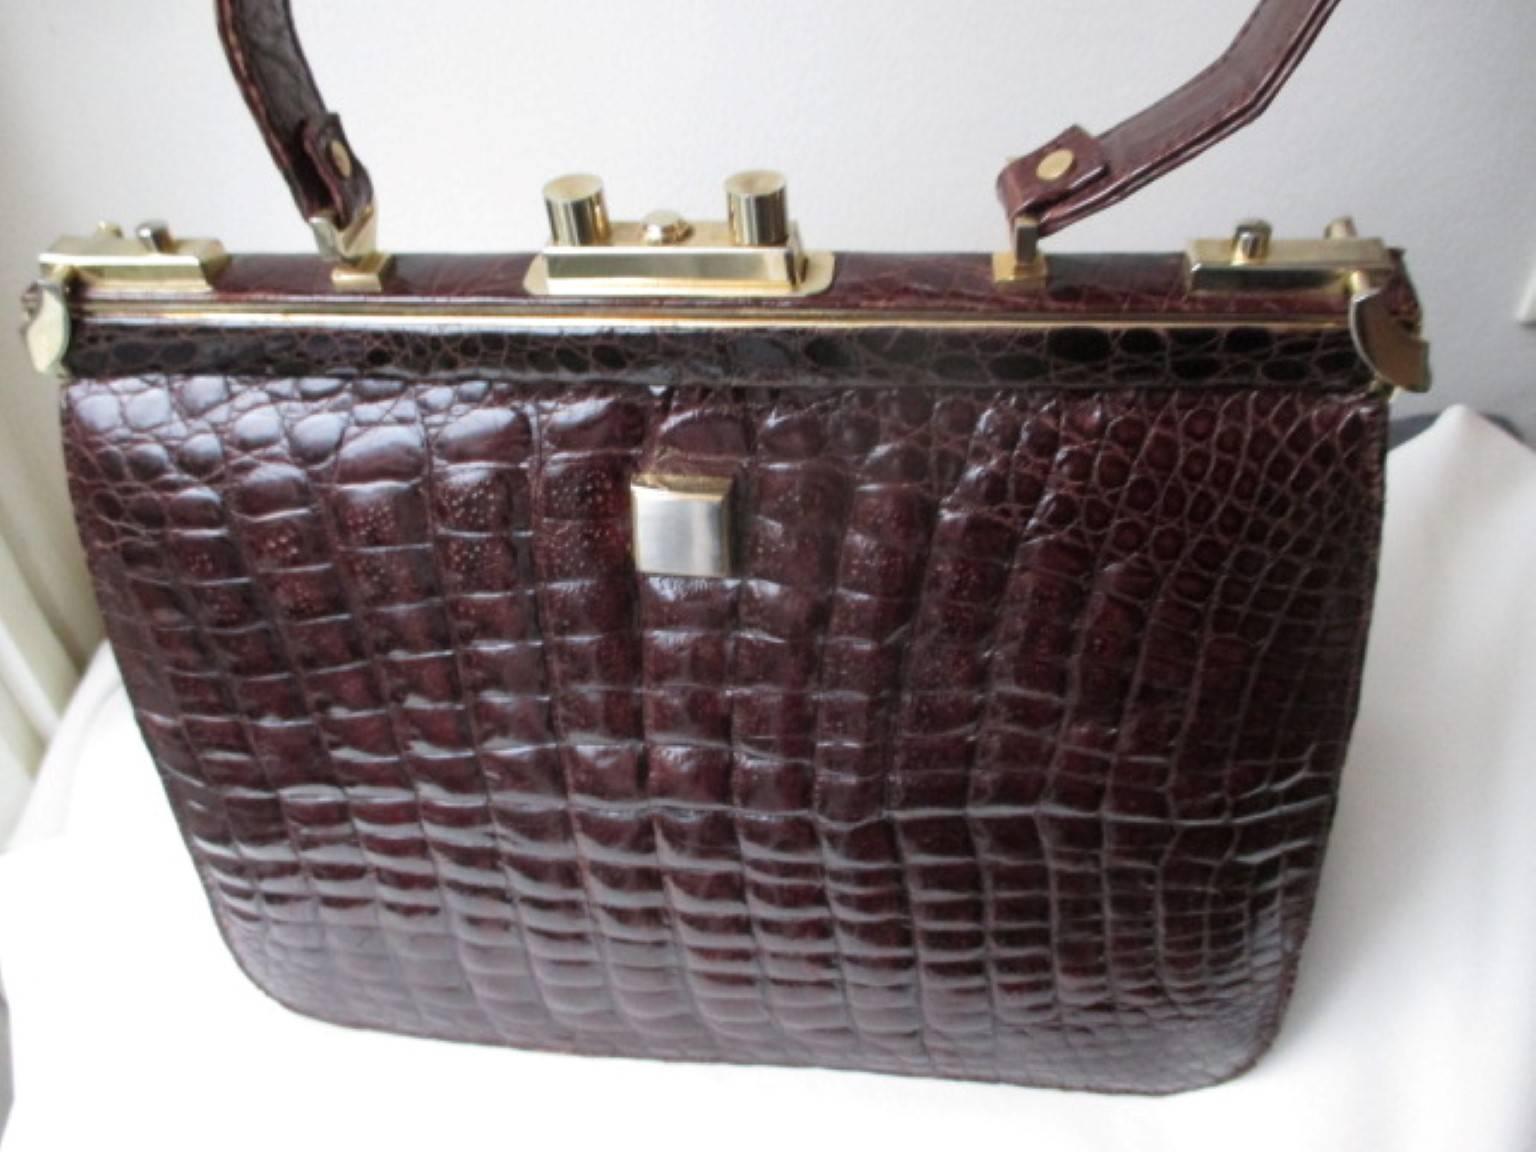 Ce sac vintage pour femme a été réalisé en crocodile vers les années 60, il a une belle peau brillante et la couleur est marron bordeaux.
Il se ferme à l'aide de deux clips latéraux et d'une serrure au milieu.
L'intérieur est en cuir suédé et